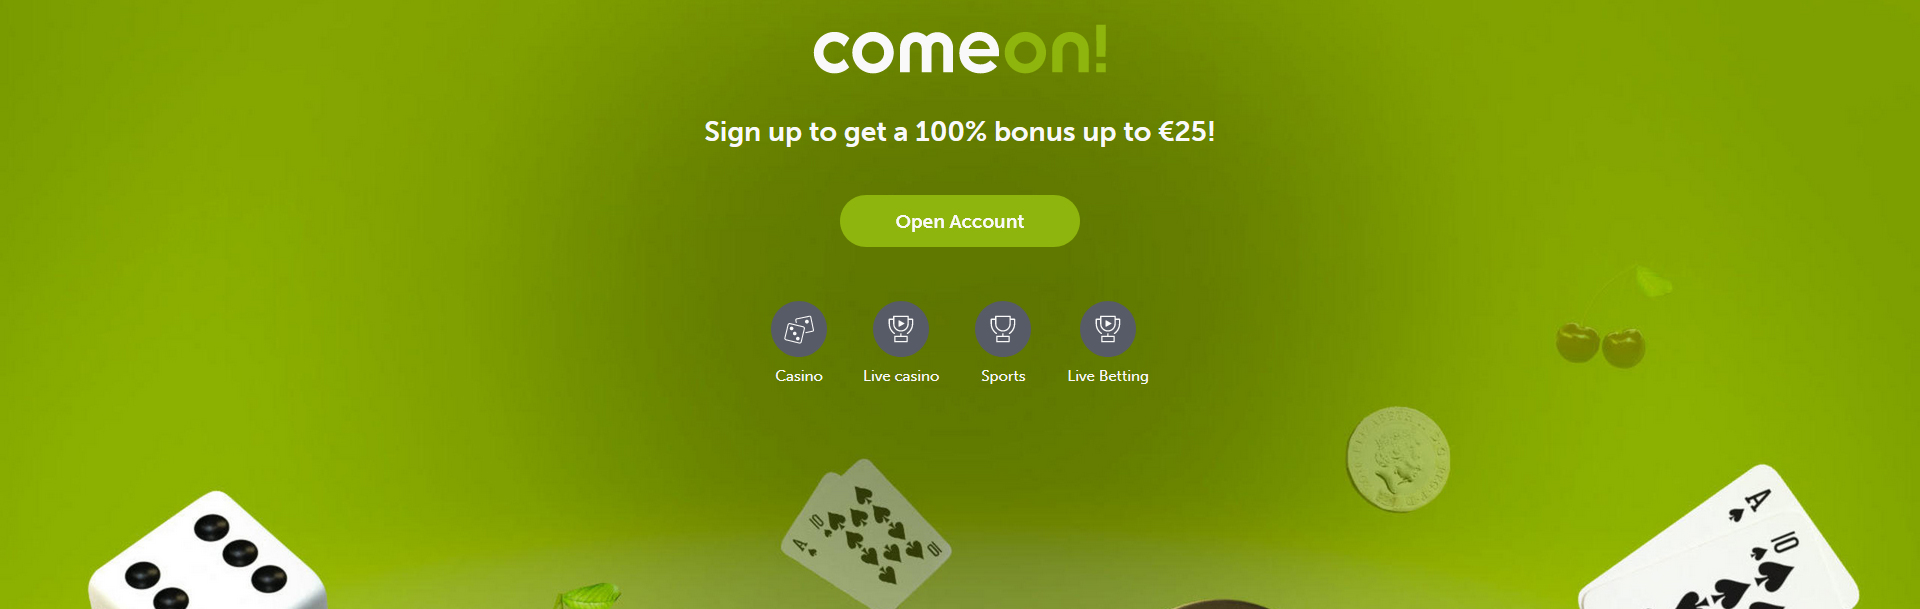 Screenshot ComeOn casino.